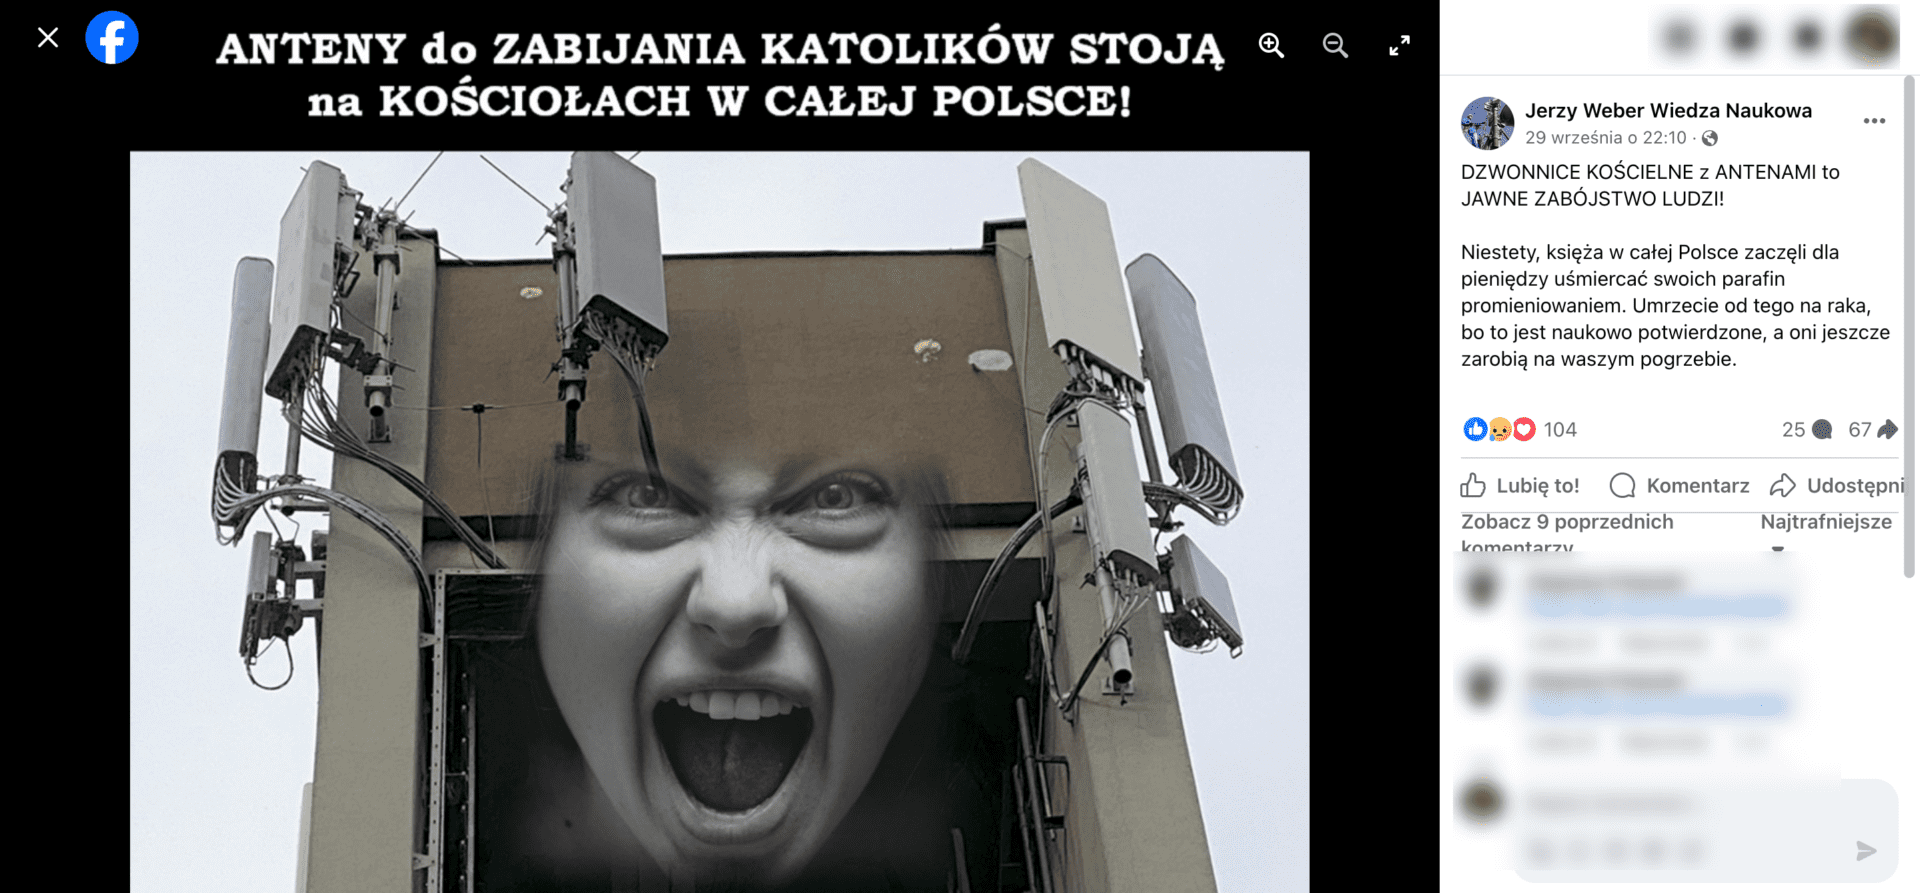 Zrzut ekranu jednego z omawianych postów. Widoczna jest twarz krzyczącego człowieka na tle anten telekomunikacyjnych.